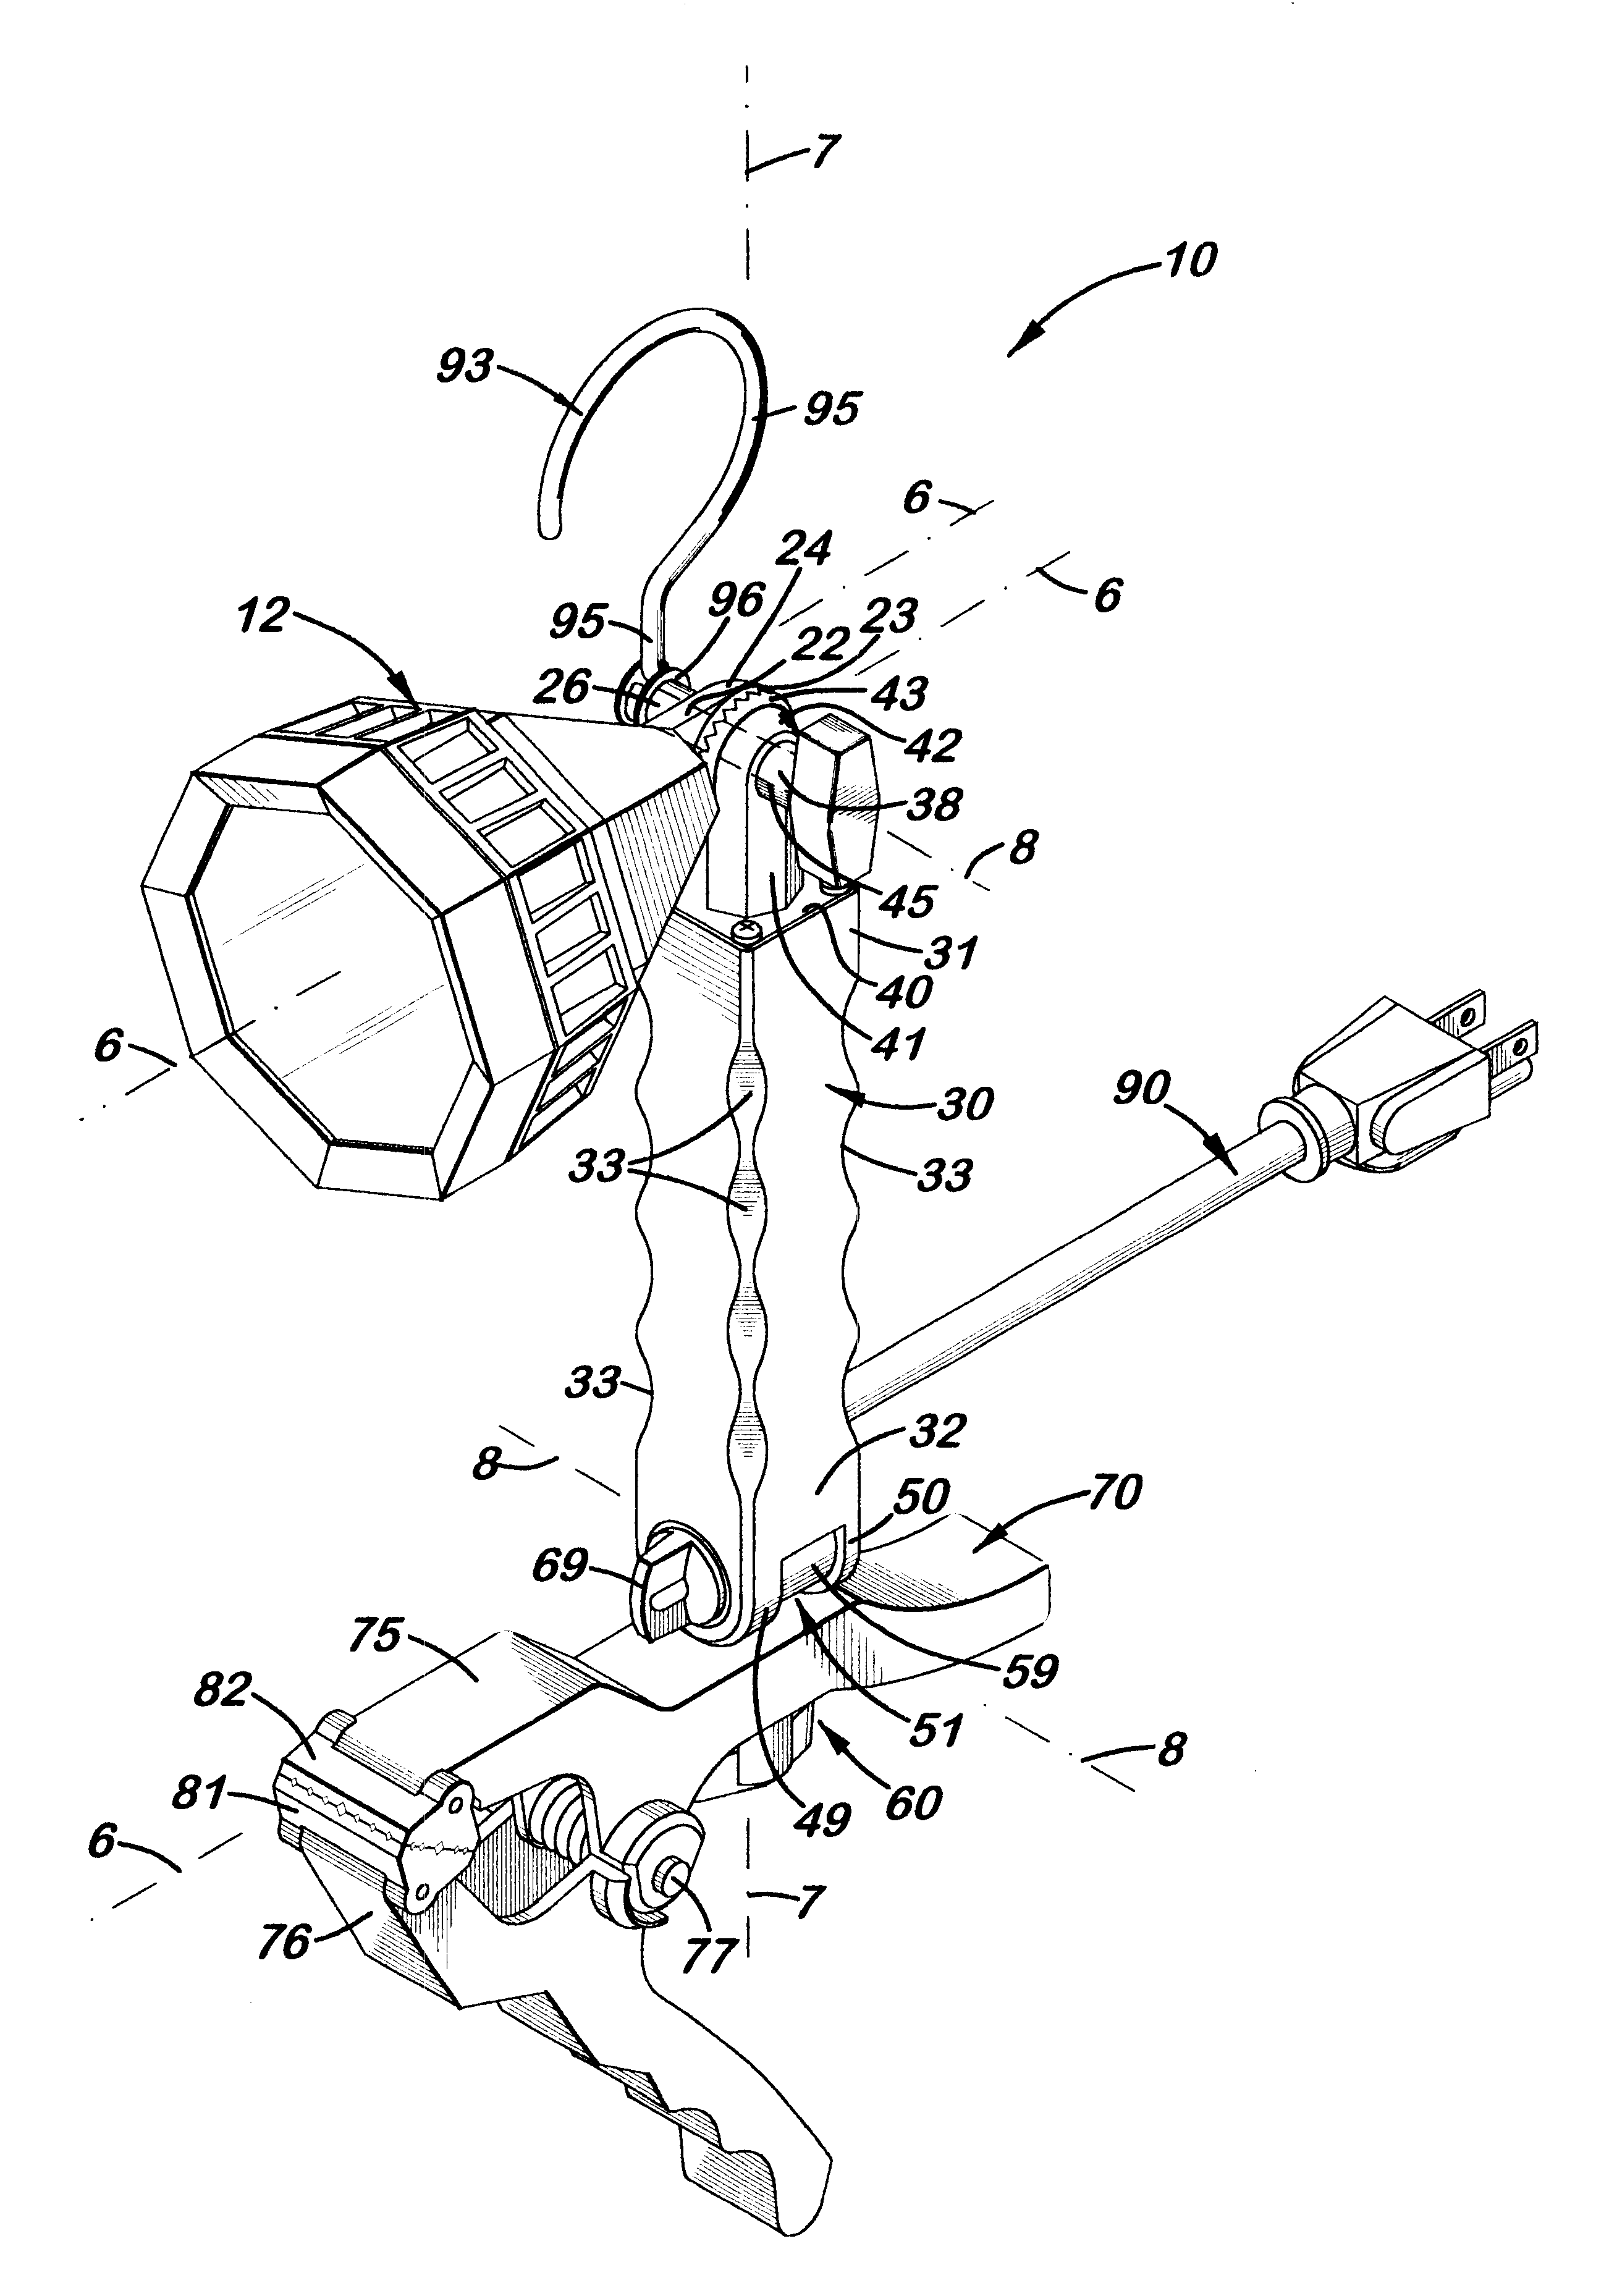 Multi-adjustable clamp work light